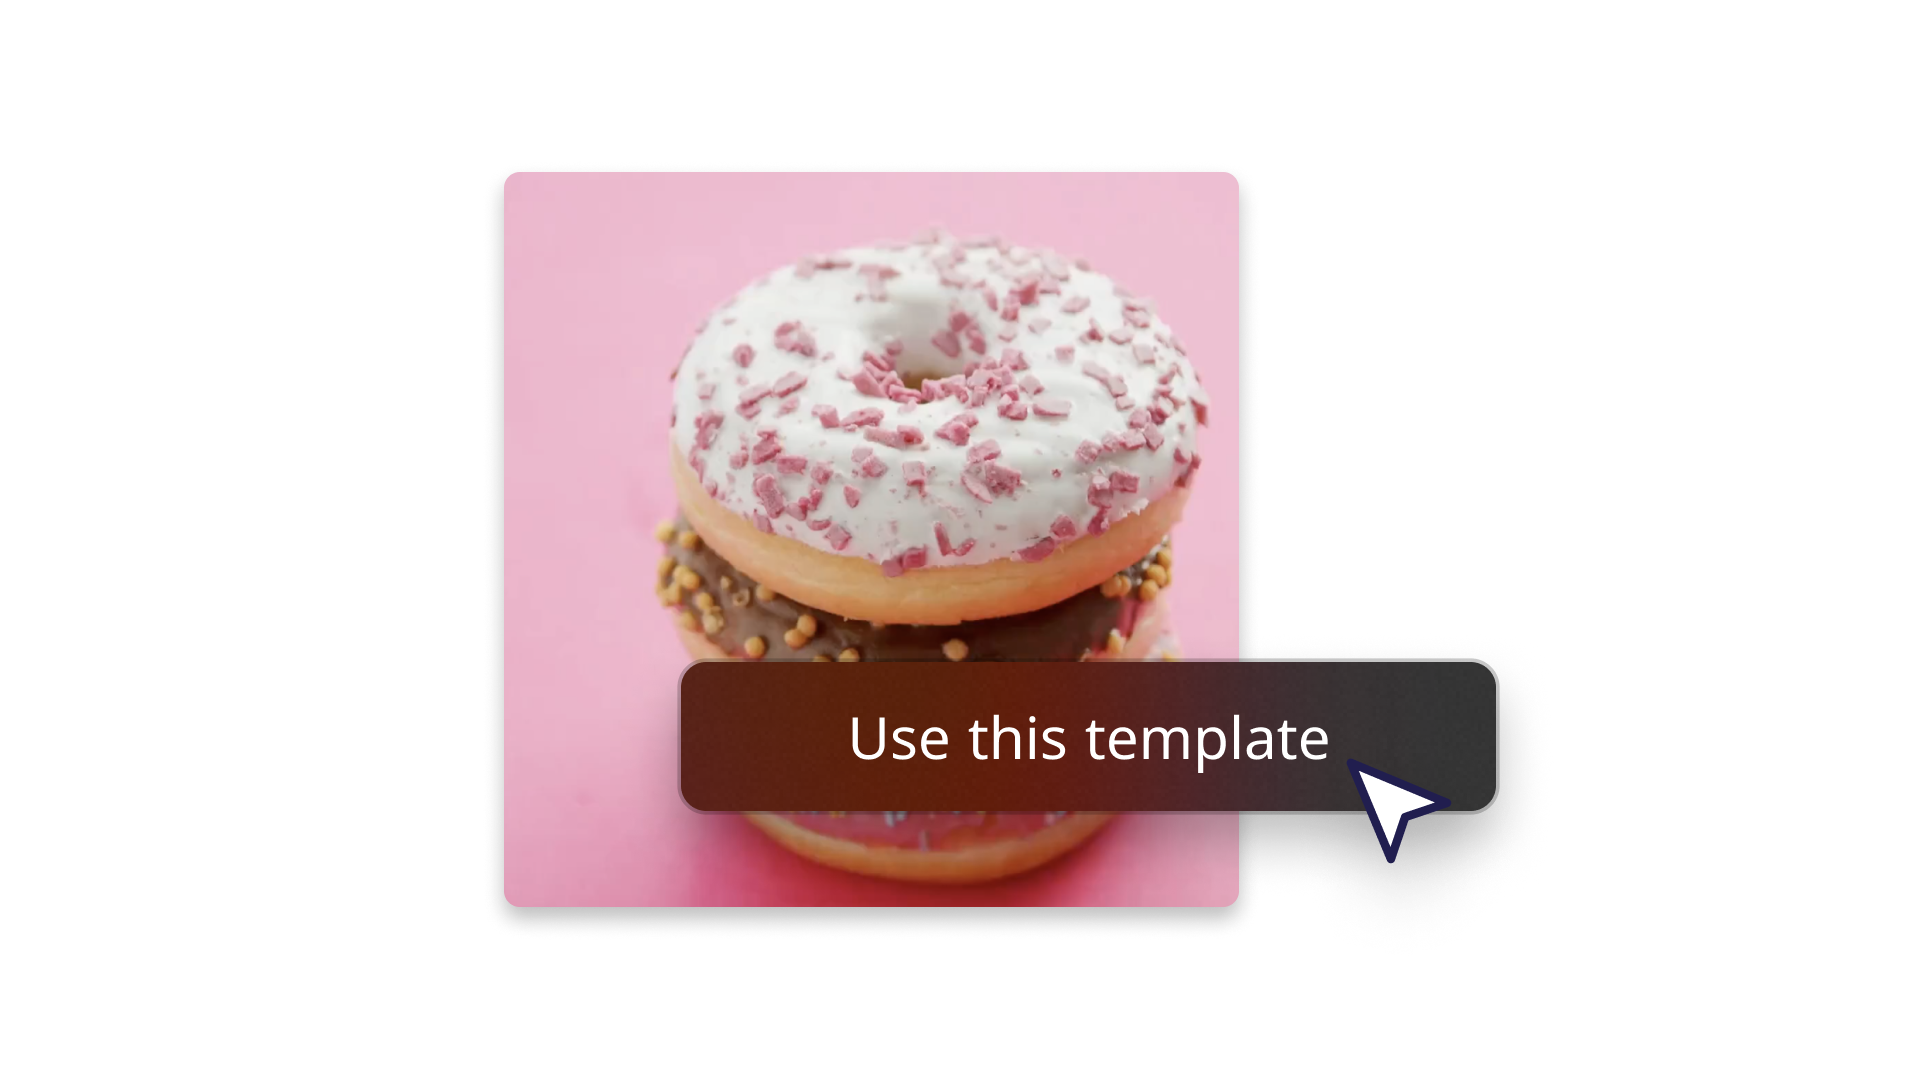 展示如何使用模板的甜甜圈特写图片 